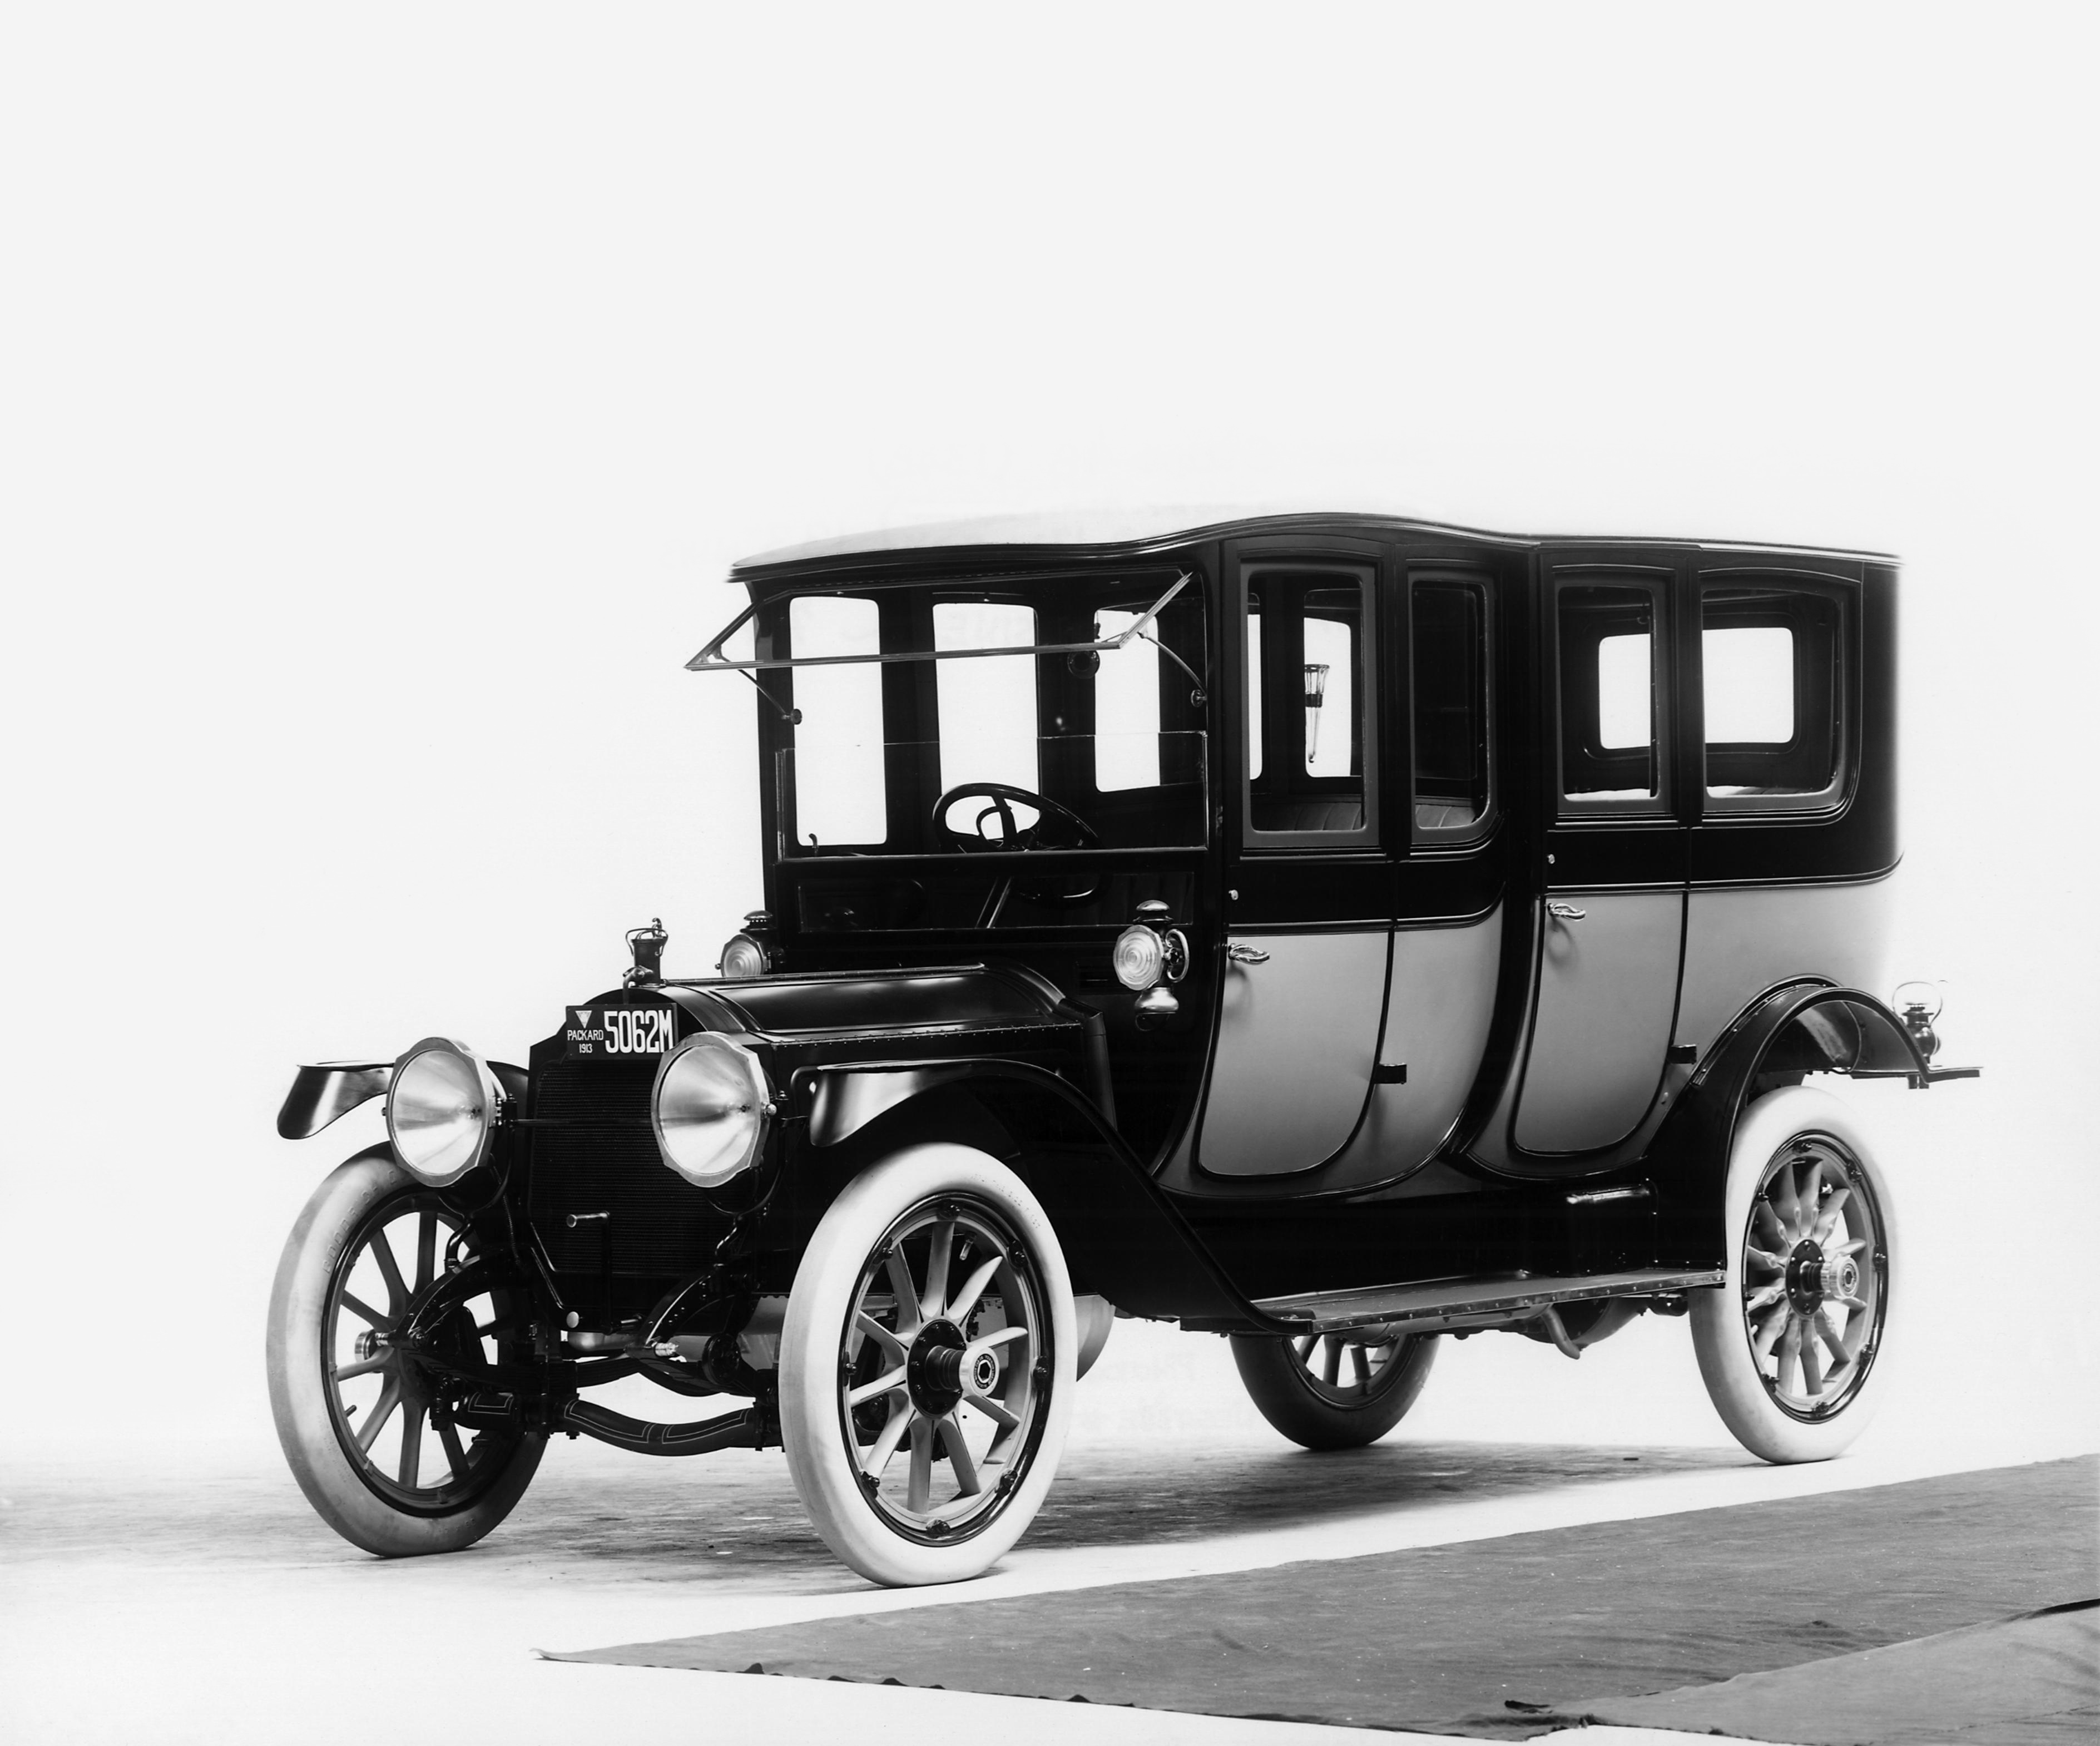 Скачать обои Лимузин Packard Six Imperial 1913 Года Выпуска на телефон бесплатно